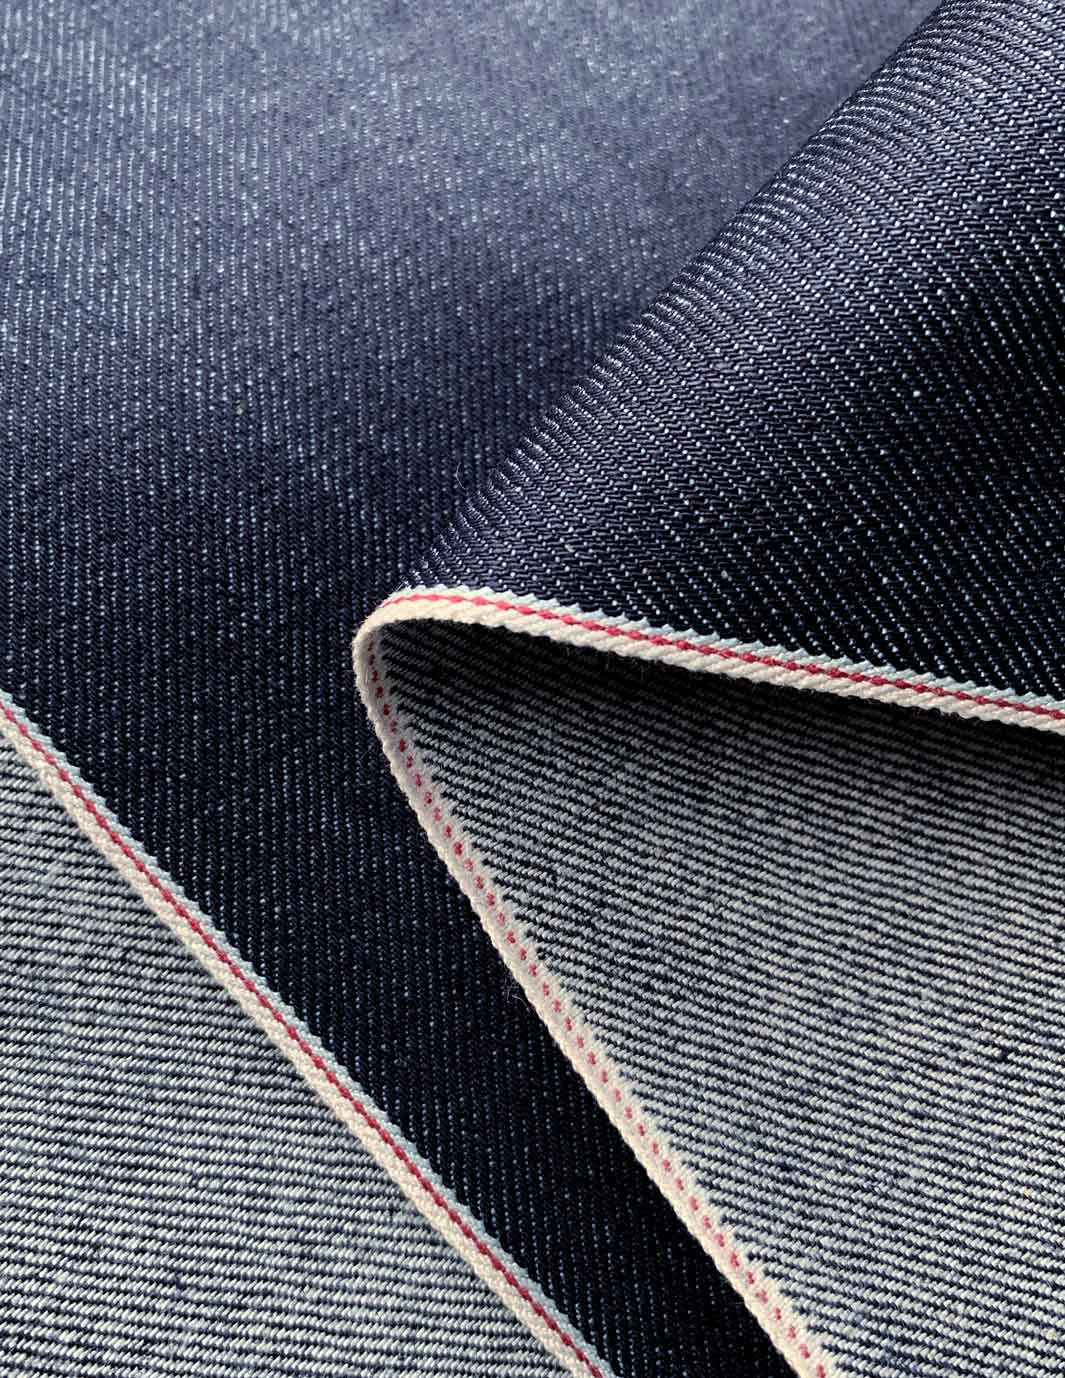 Denim Upholstery Fabric - Calgary Interiors